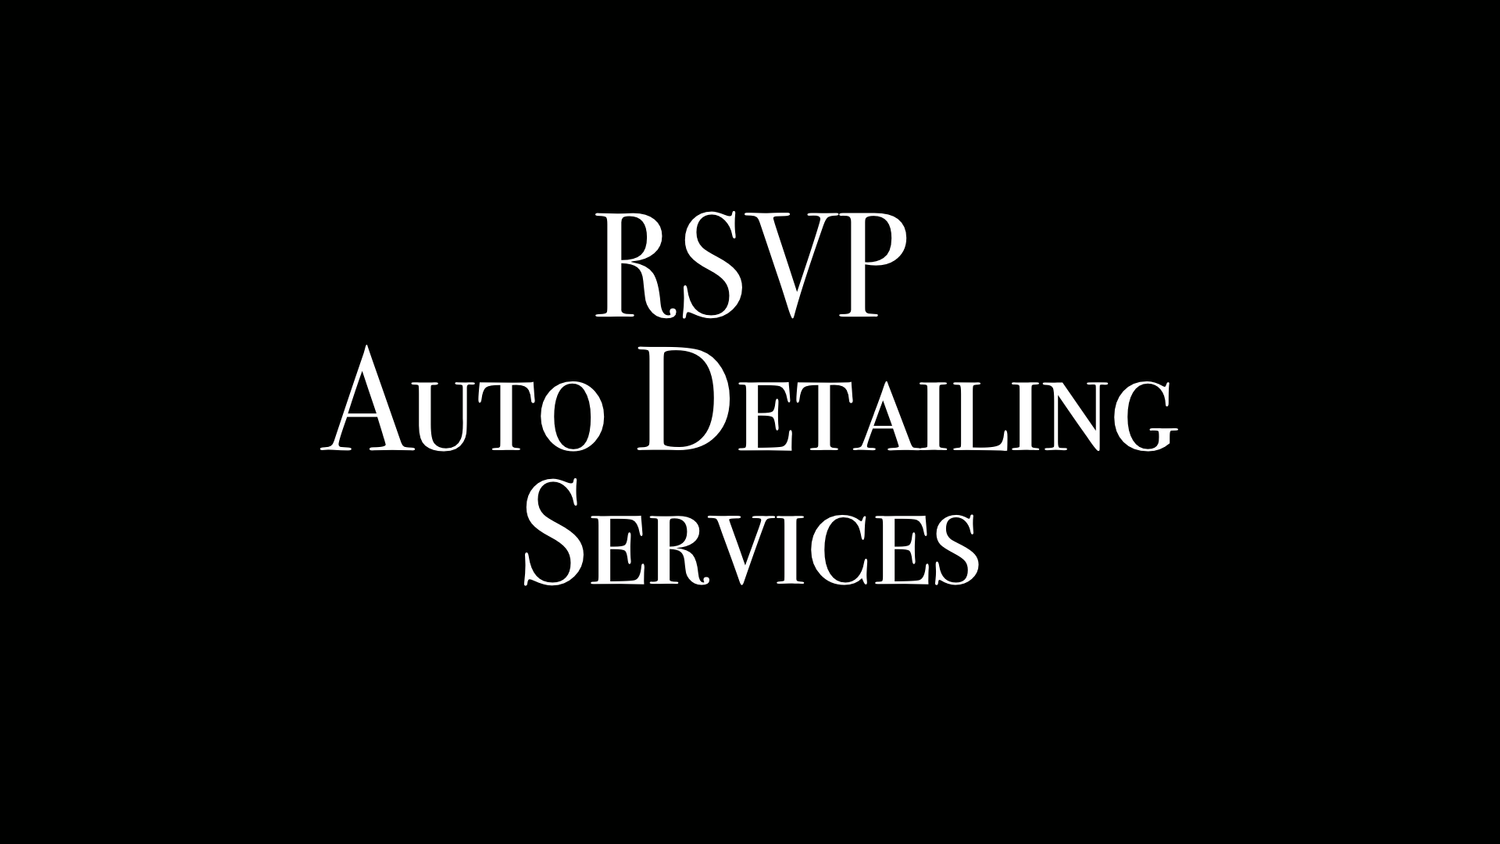 RSVP Auto Detailing Services